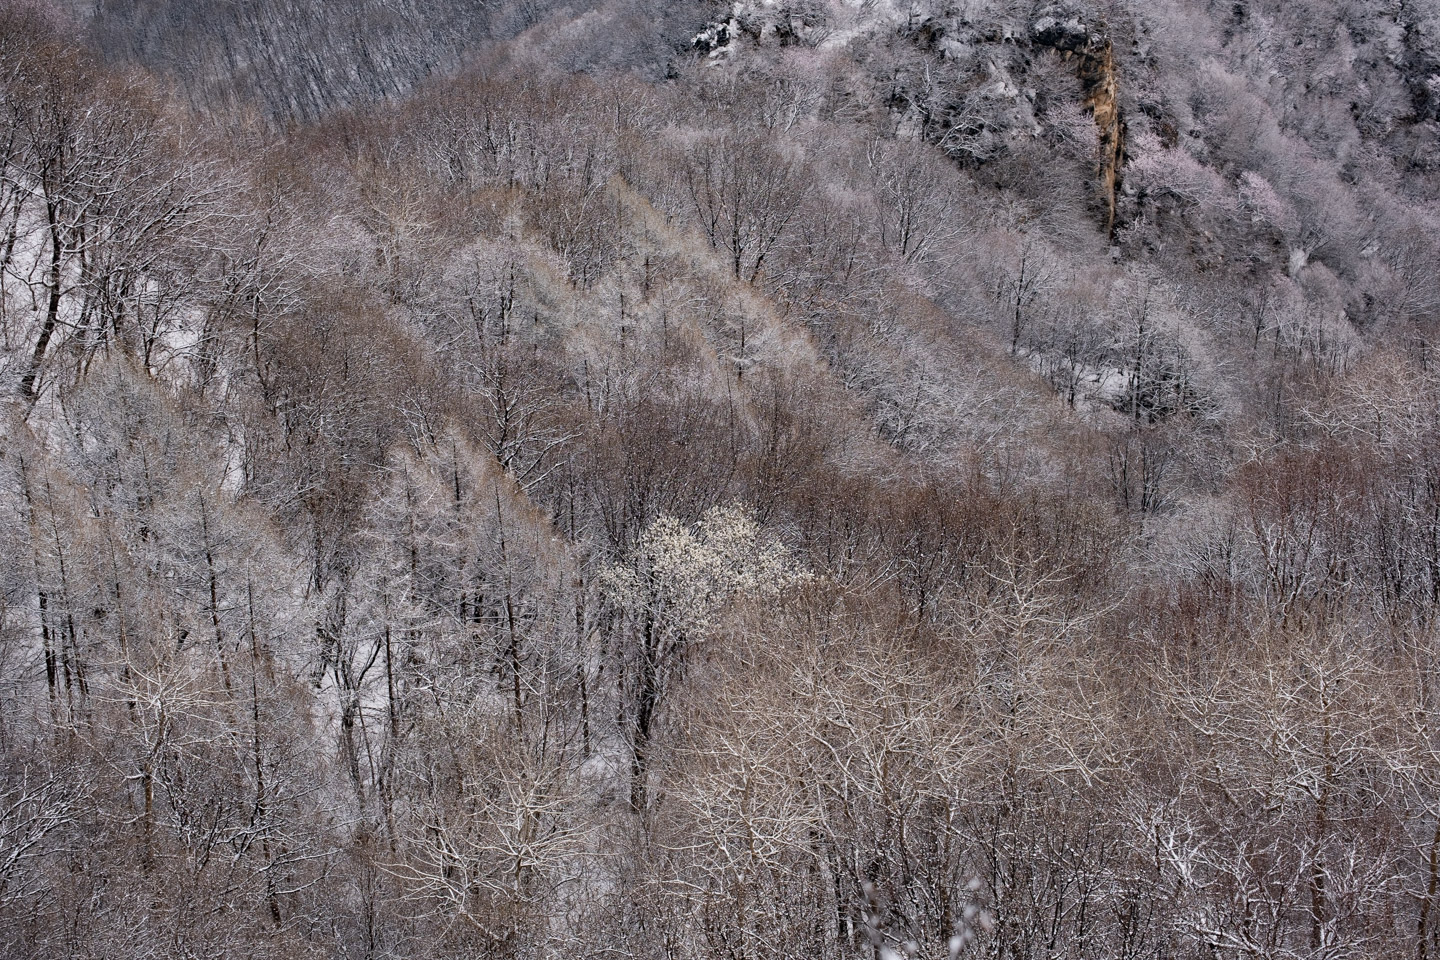 Snowy trees from Jiankou Great Wall